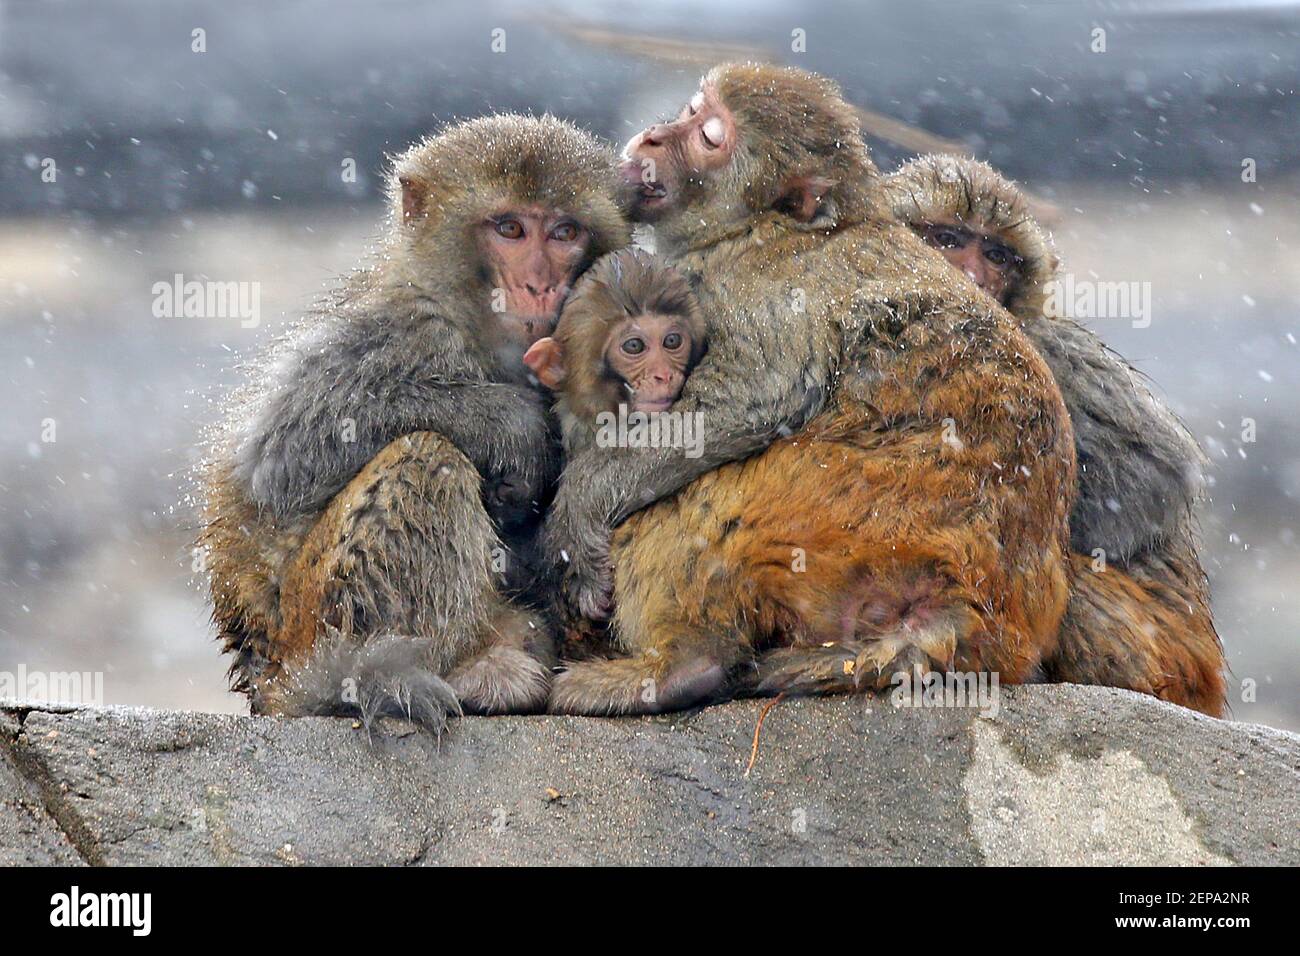 Los monos grandes abrazan a un mono pequeño para mantenerse caliente en la  nieve en la ciudad de Lianyungang, provincia de Jiangsu, al este de China,  22 de noviembre de 2019. (Foto